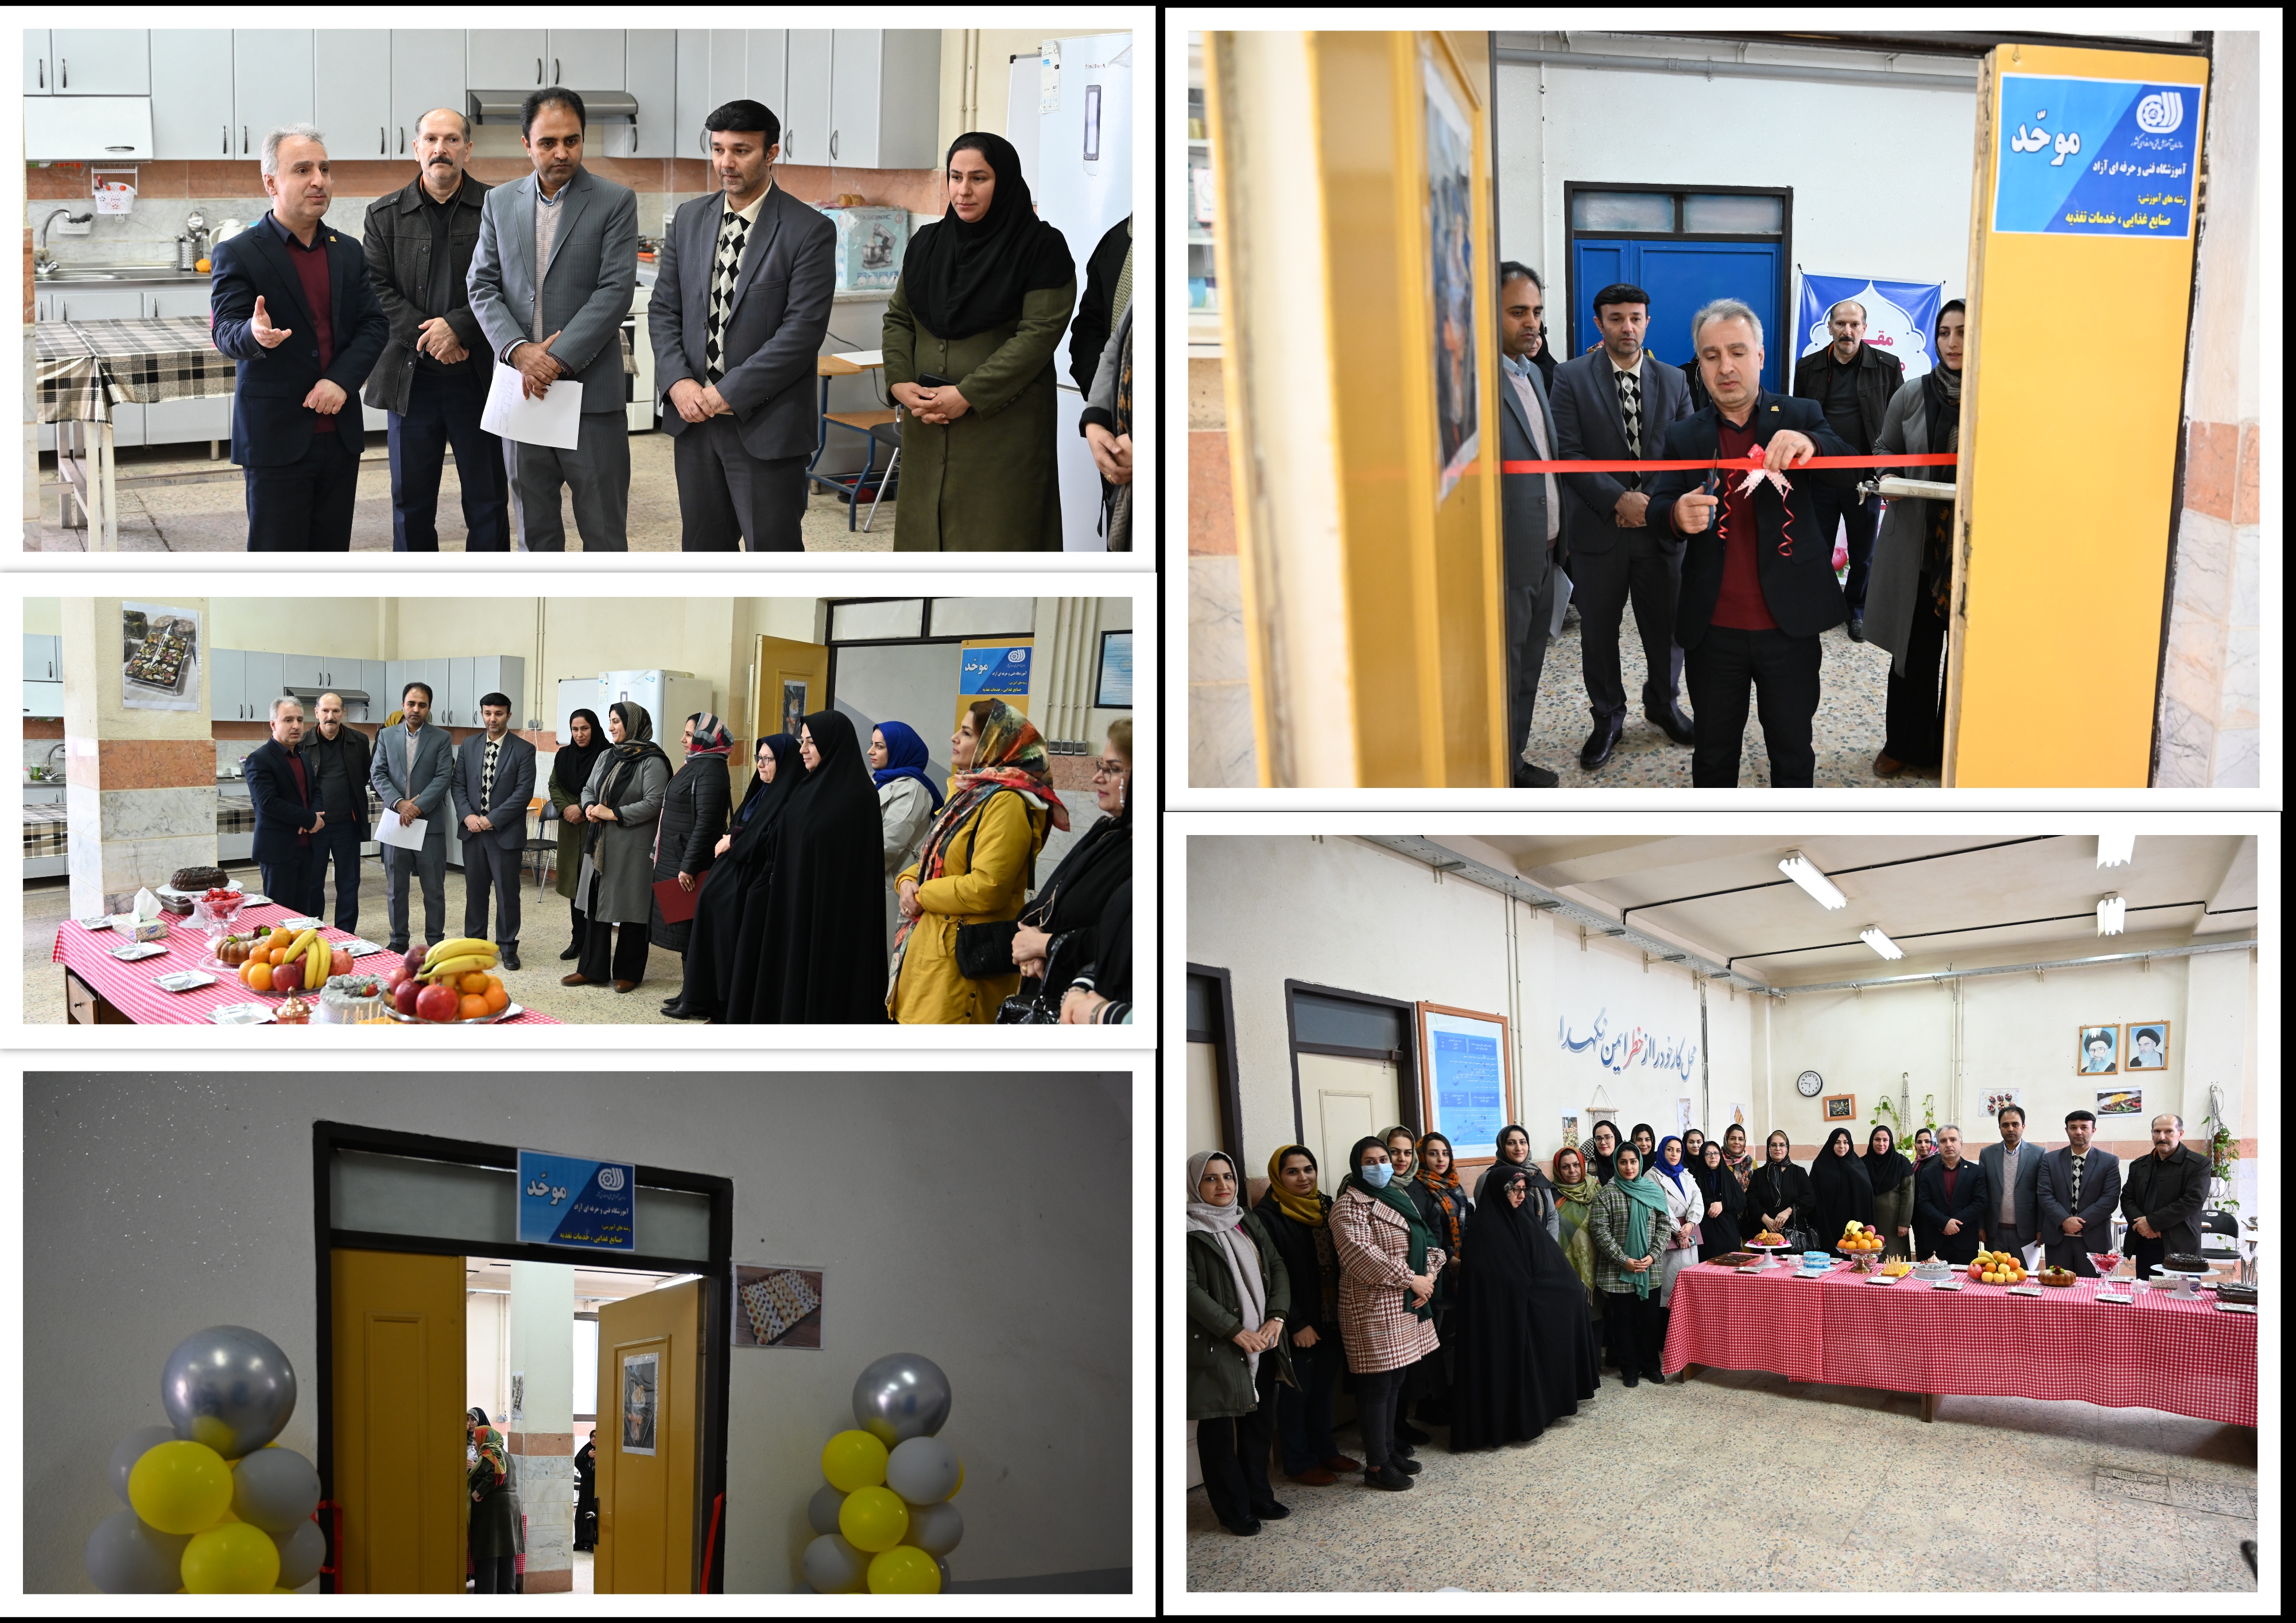 افتتاح آموزشگاه صنایع غذایی و خدمات تغذیه ای توسط مدیرکل آموزش فنی و حرفه ای گیلان
